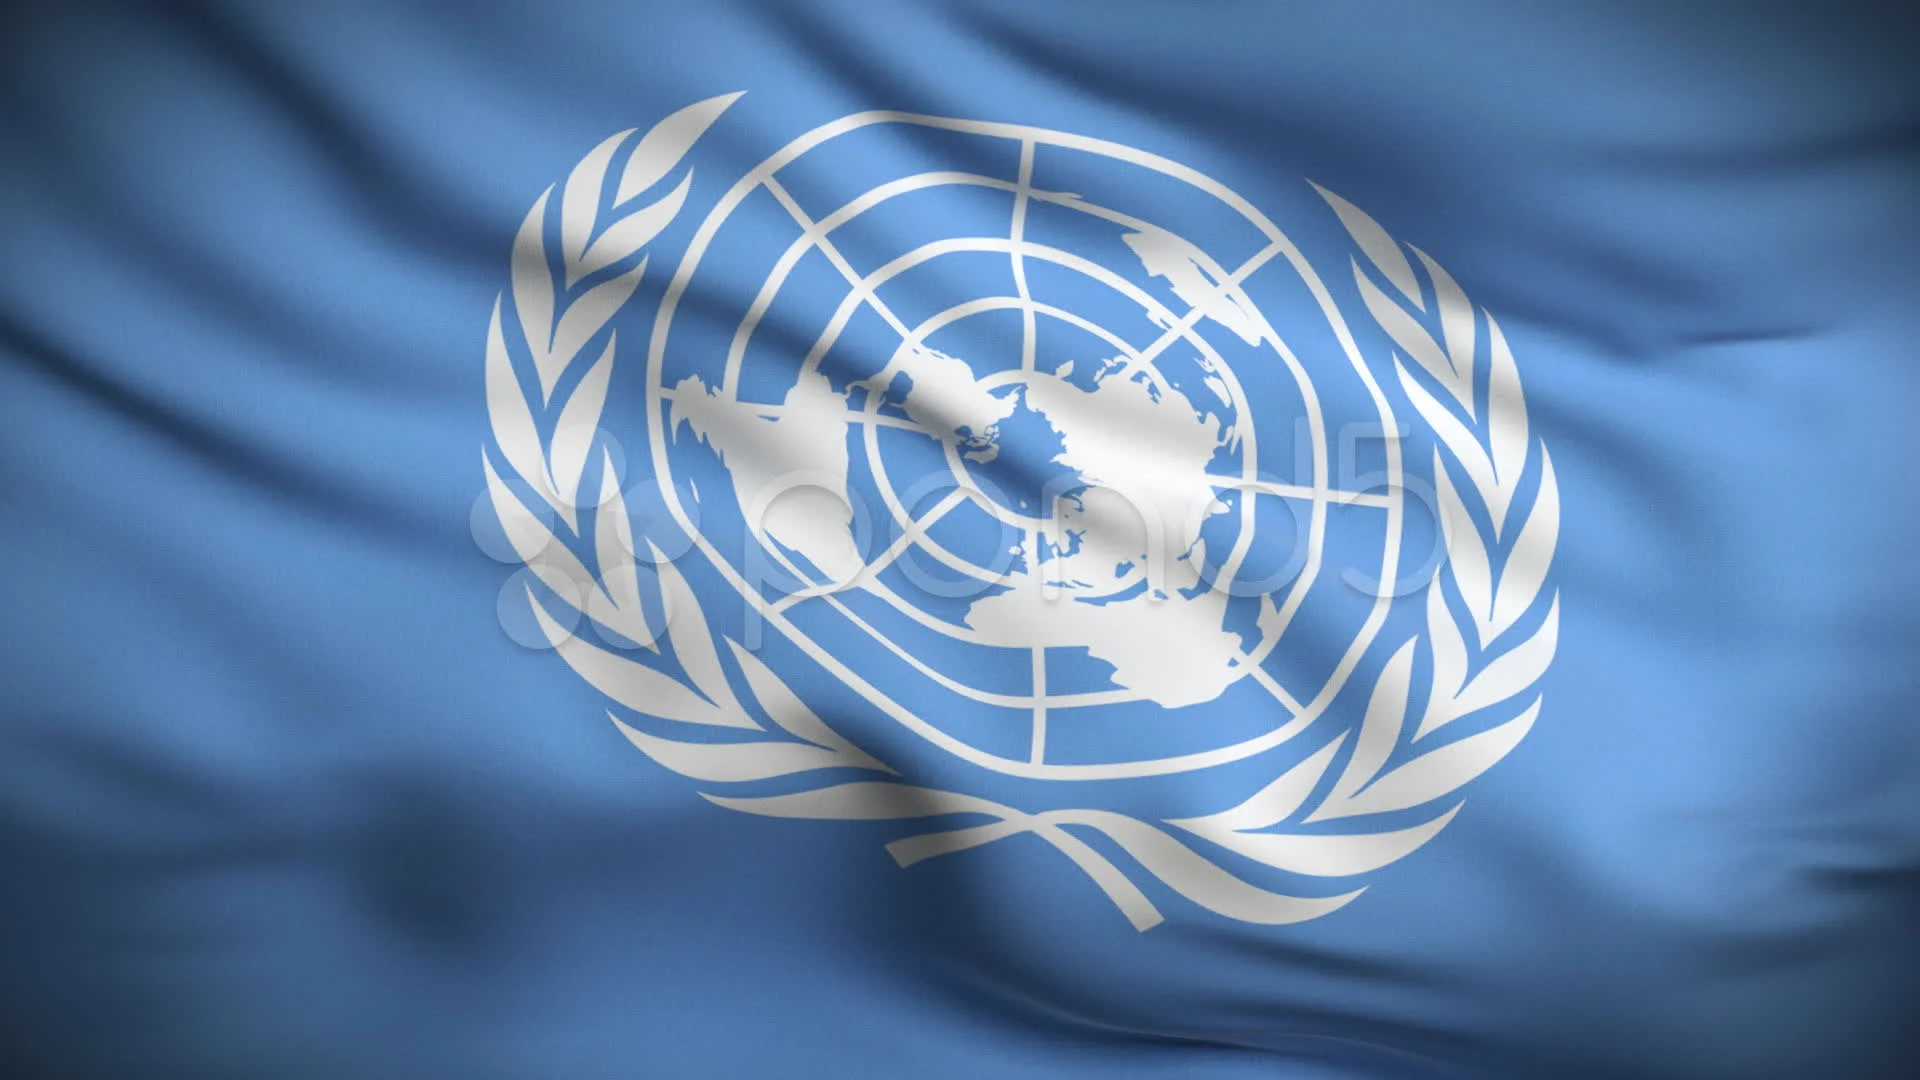 Минимальные стандартные правила оон. Флаг ООН. Флаг ООН 1995. Совет безопасности ООН логотип. Флаг ООН квадратный.